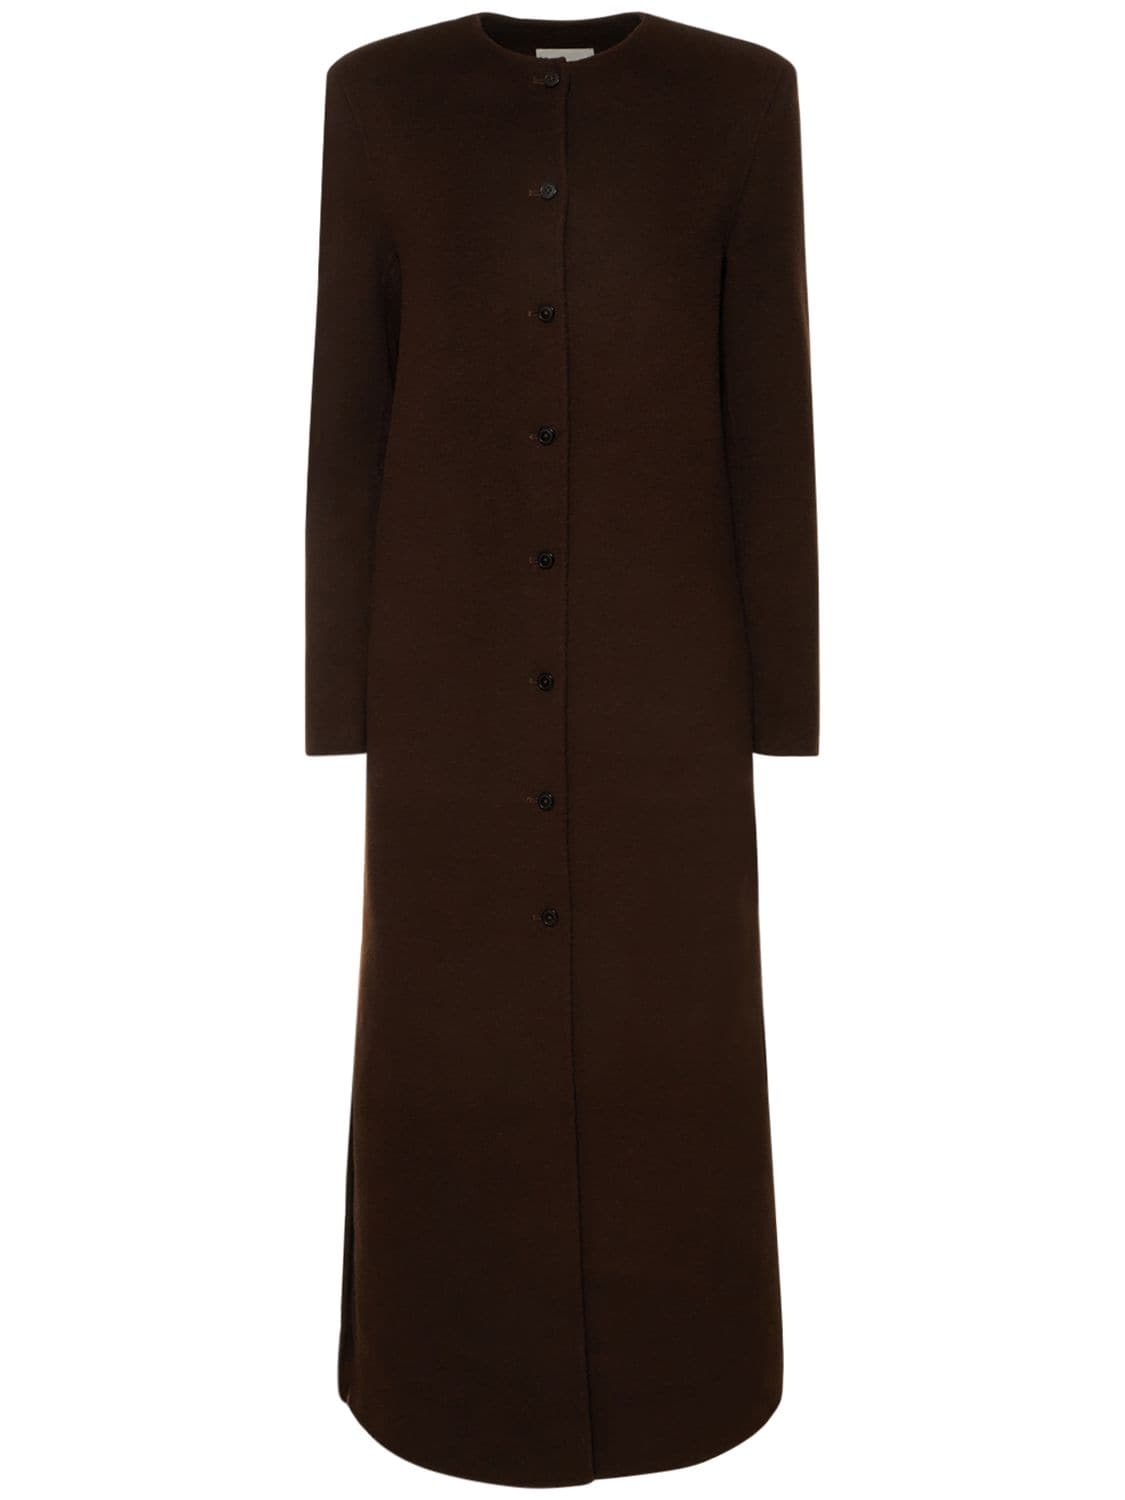 Image of Martil Wool & Cashmere Long Coat